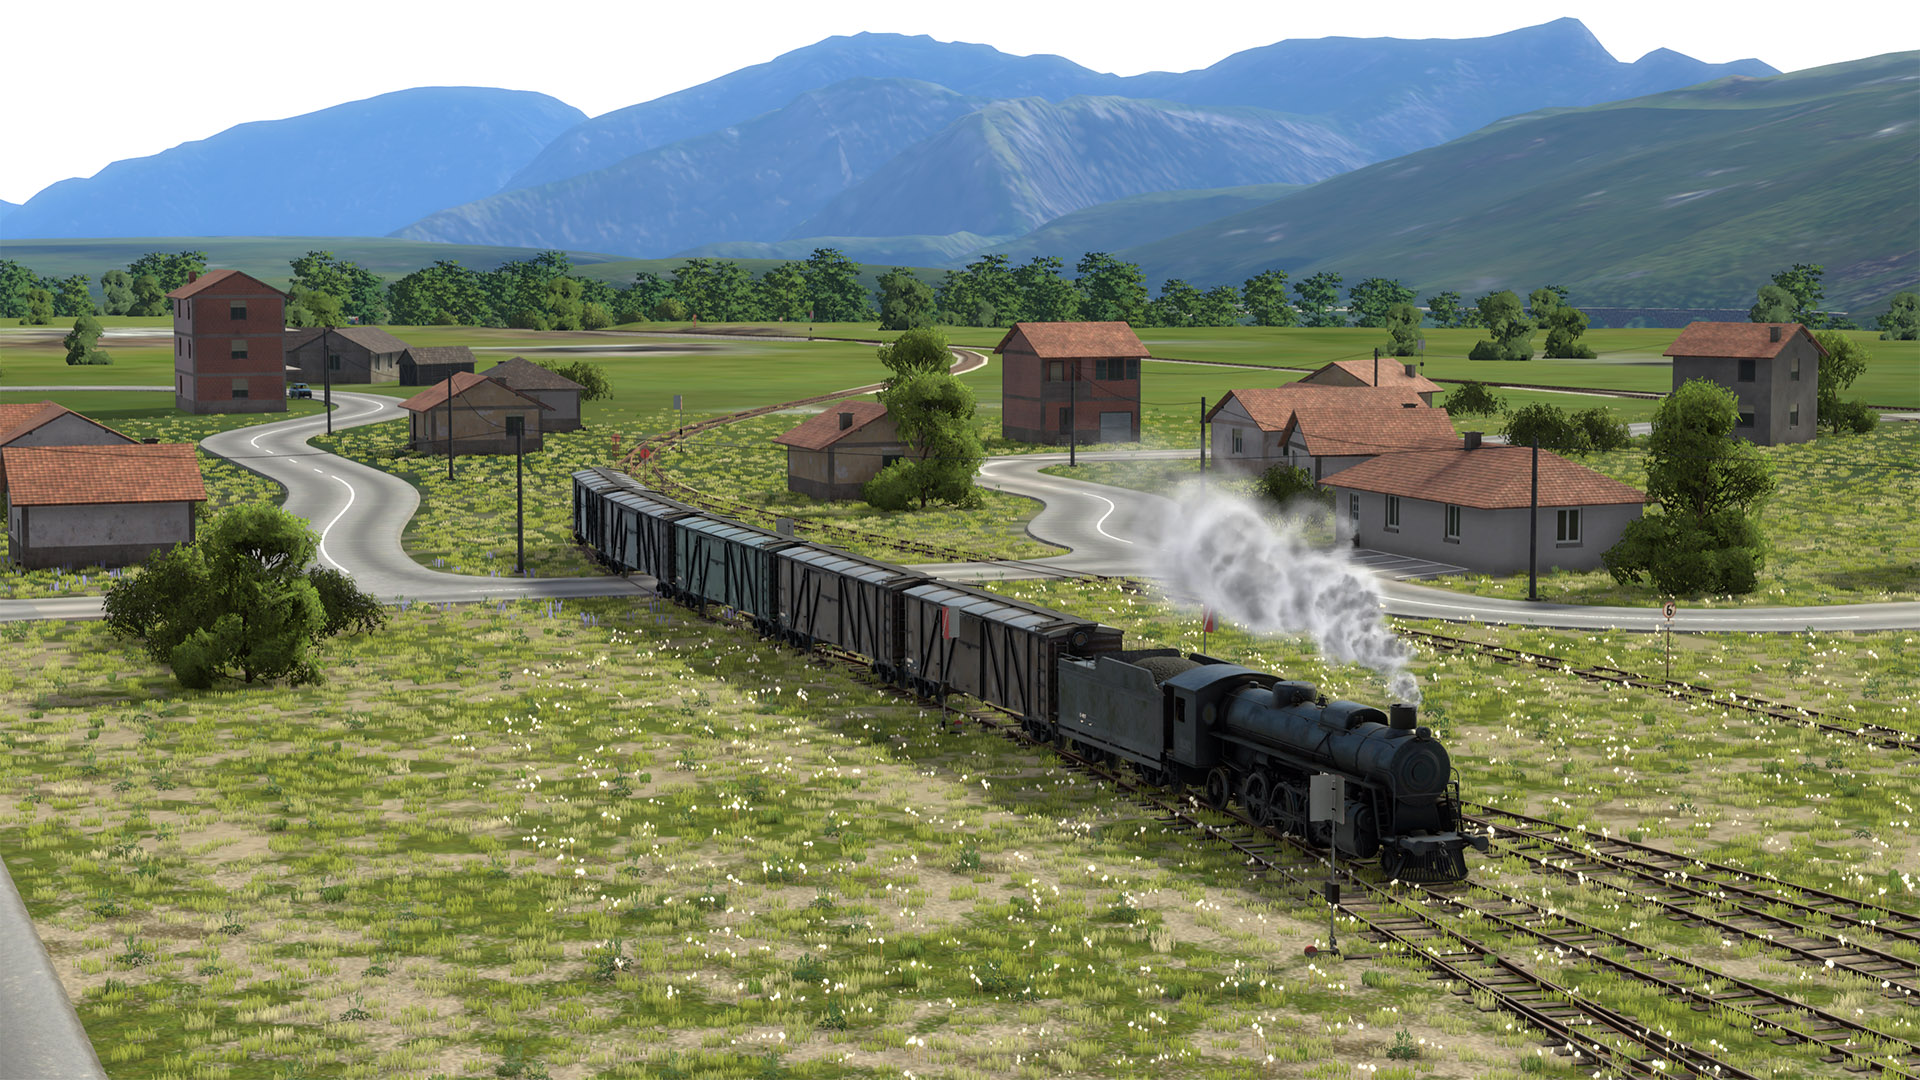 derailvalley-train-steam-rural-2-4k.jpg